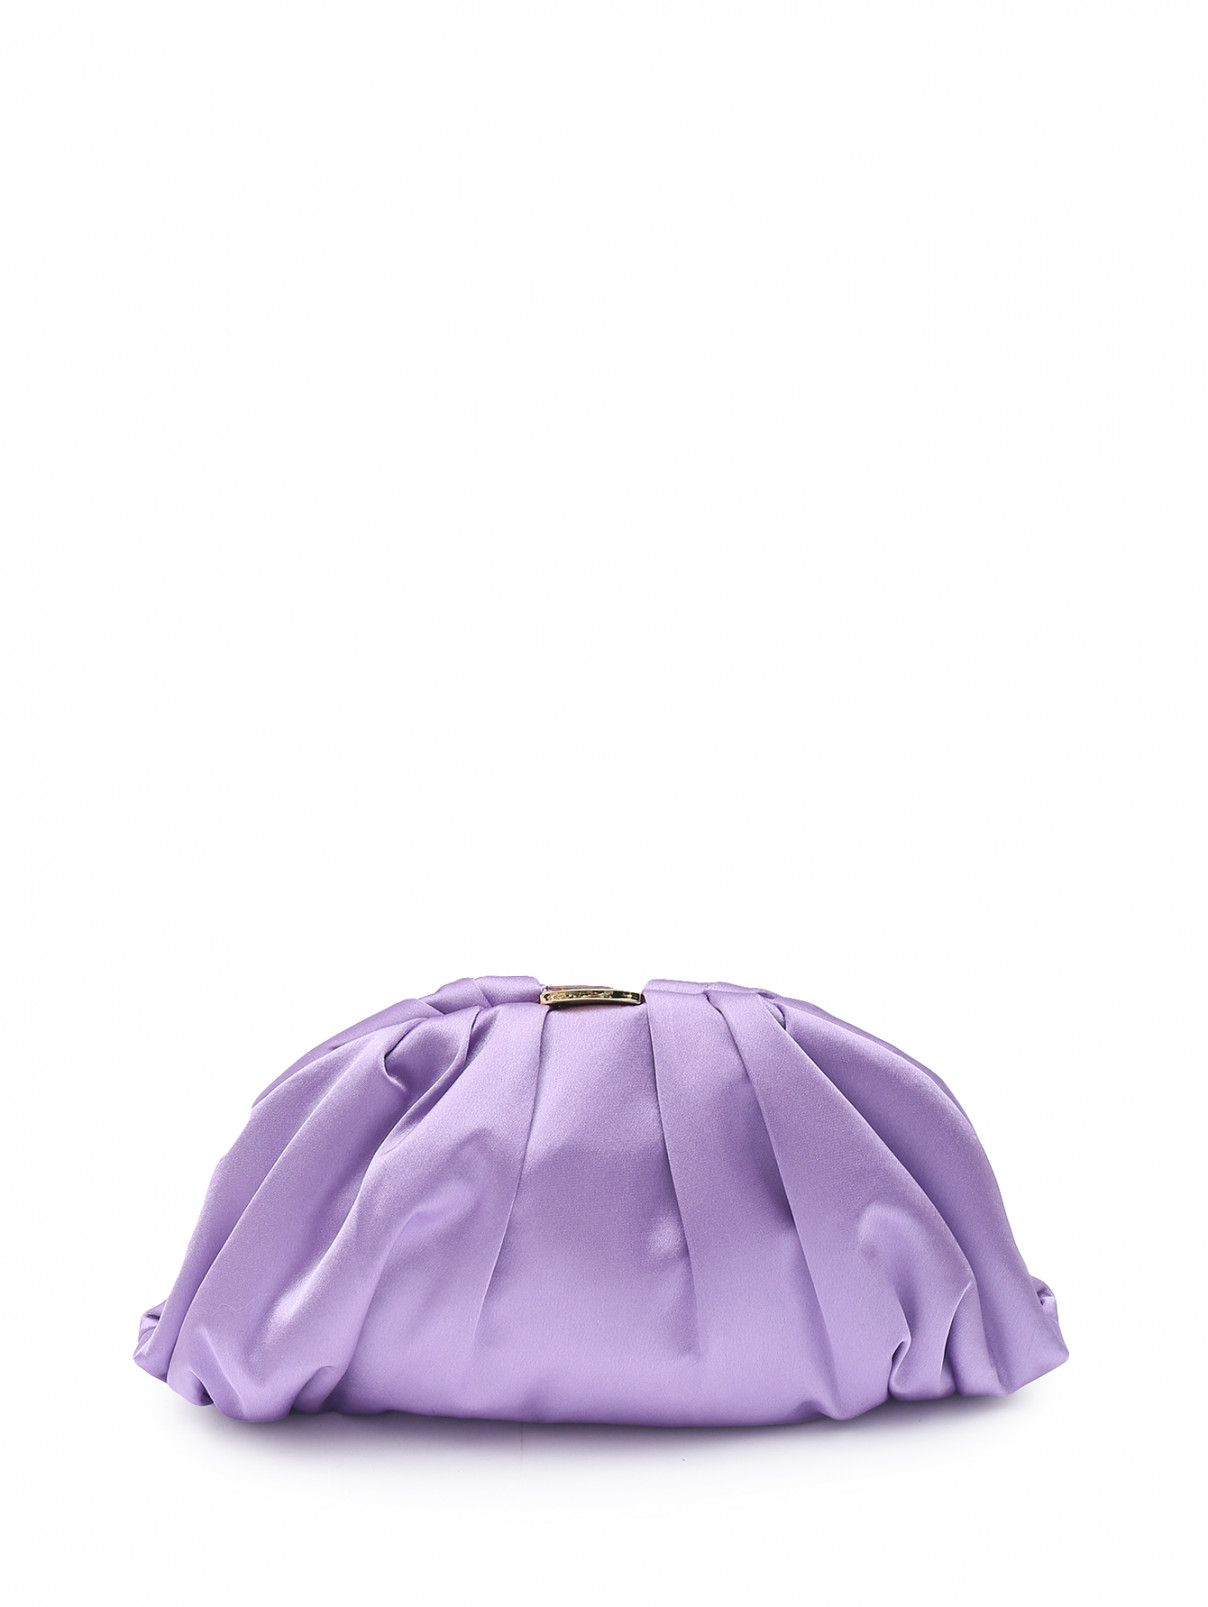 Клатч из текстиля на цепочке Luisa Spagnoli  –  Общий вид  – Цвет:  Фиолетовый